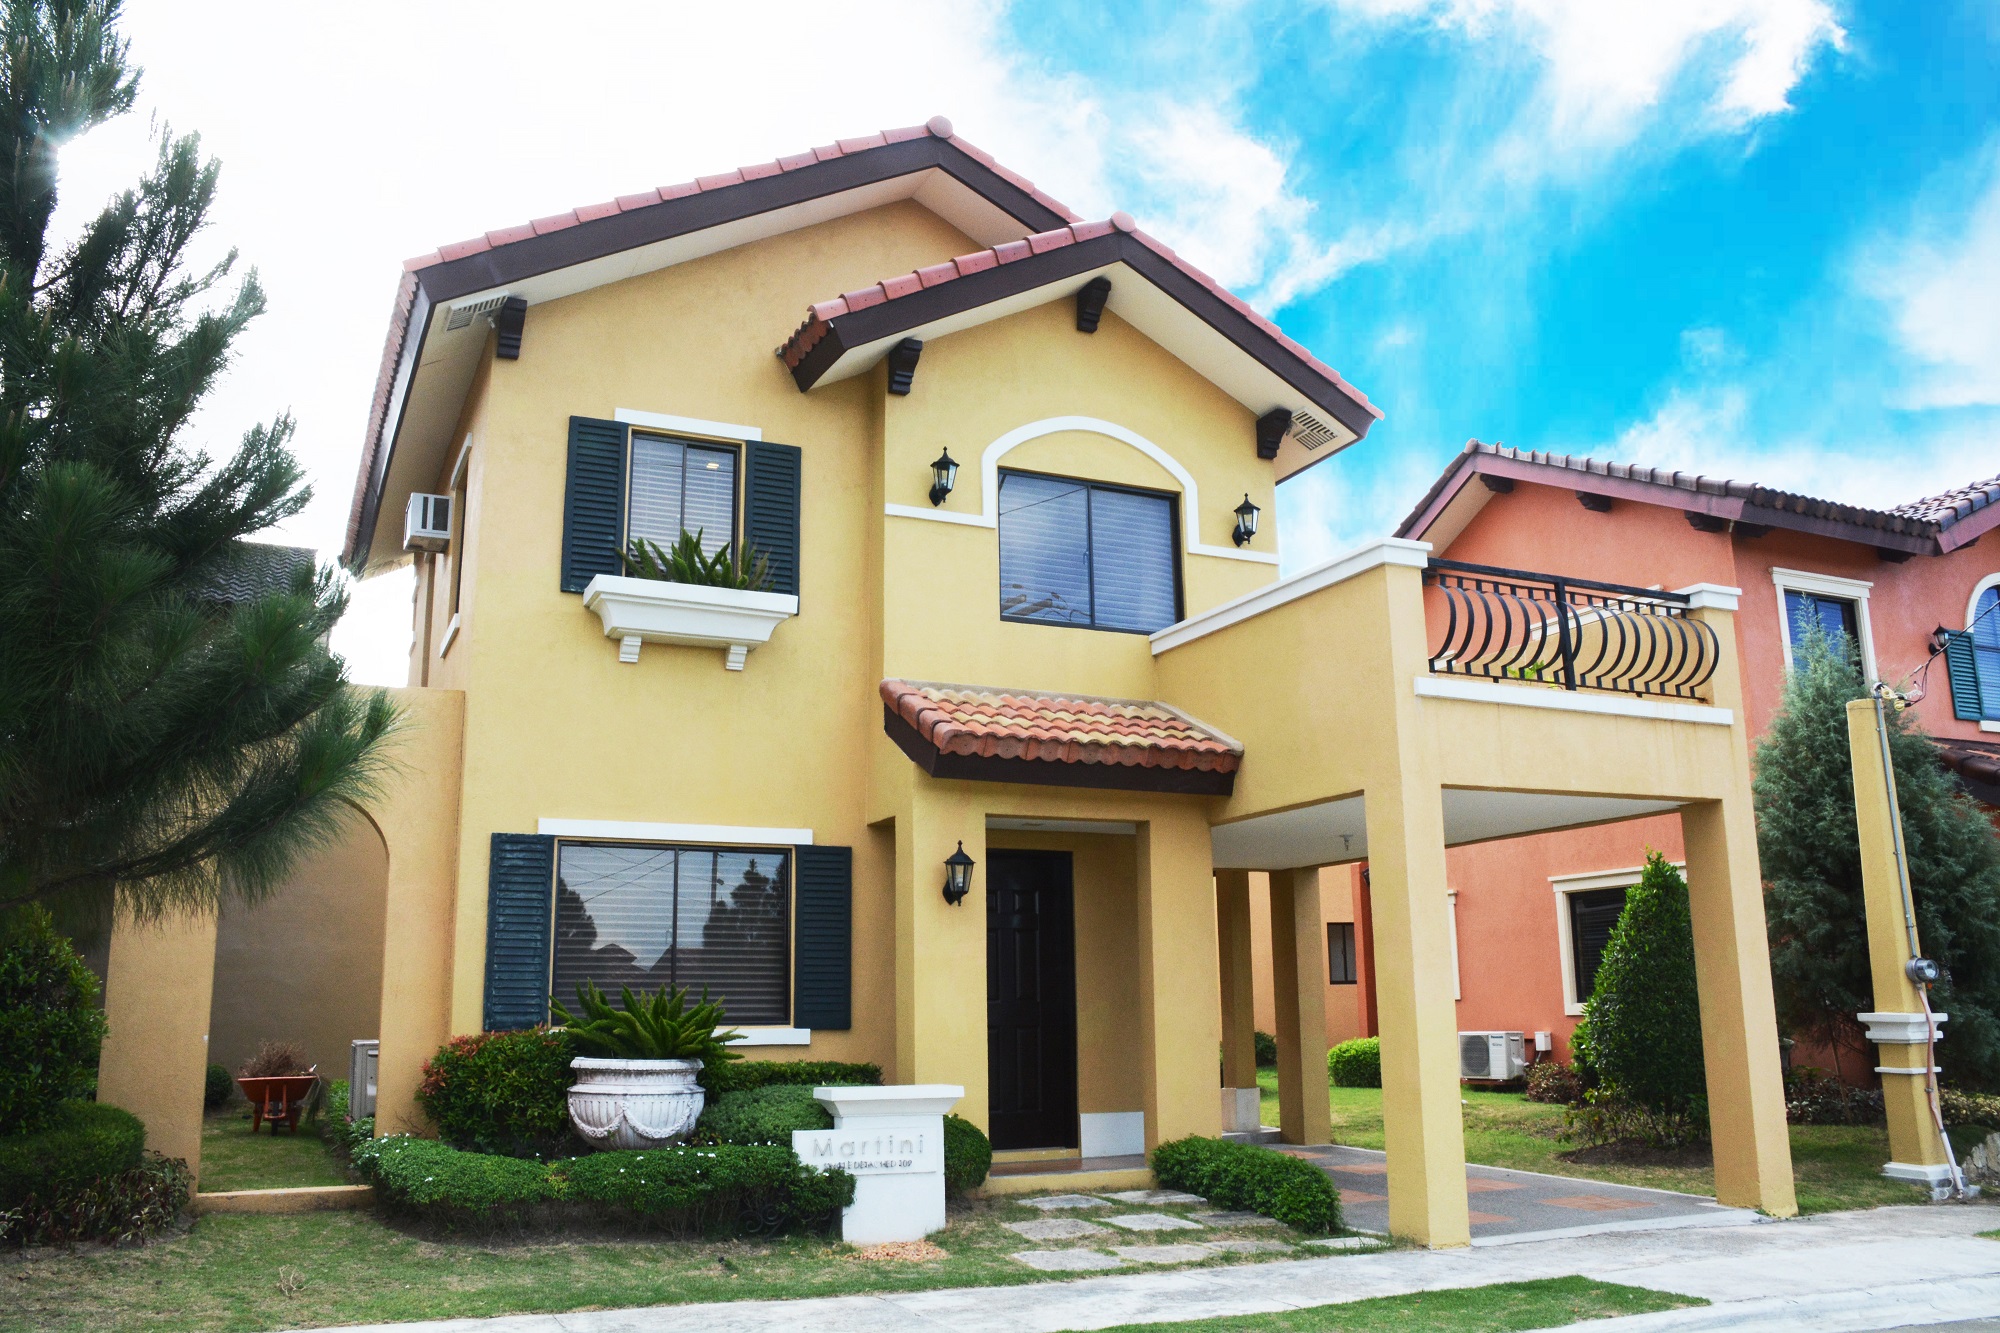 A 110 sqm House and Lot Property at Valenza Santa Rosa Laguna